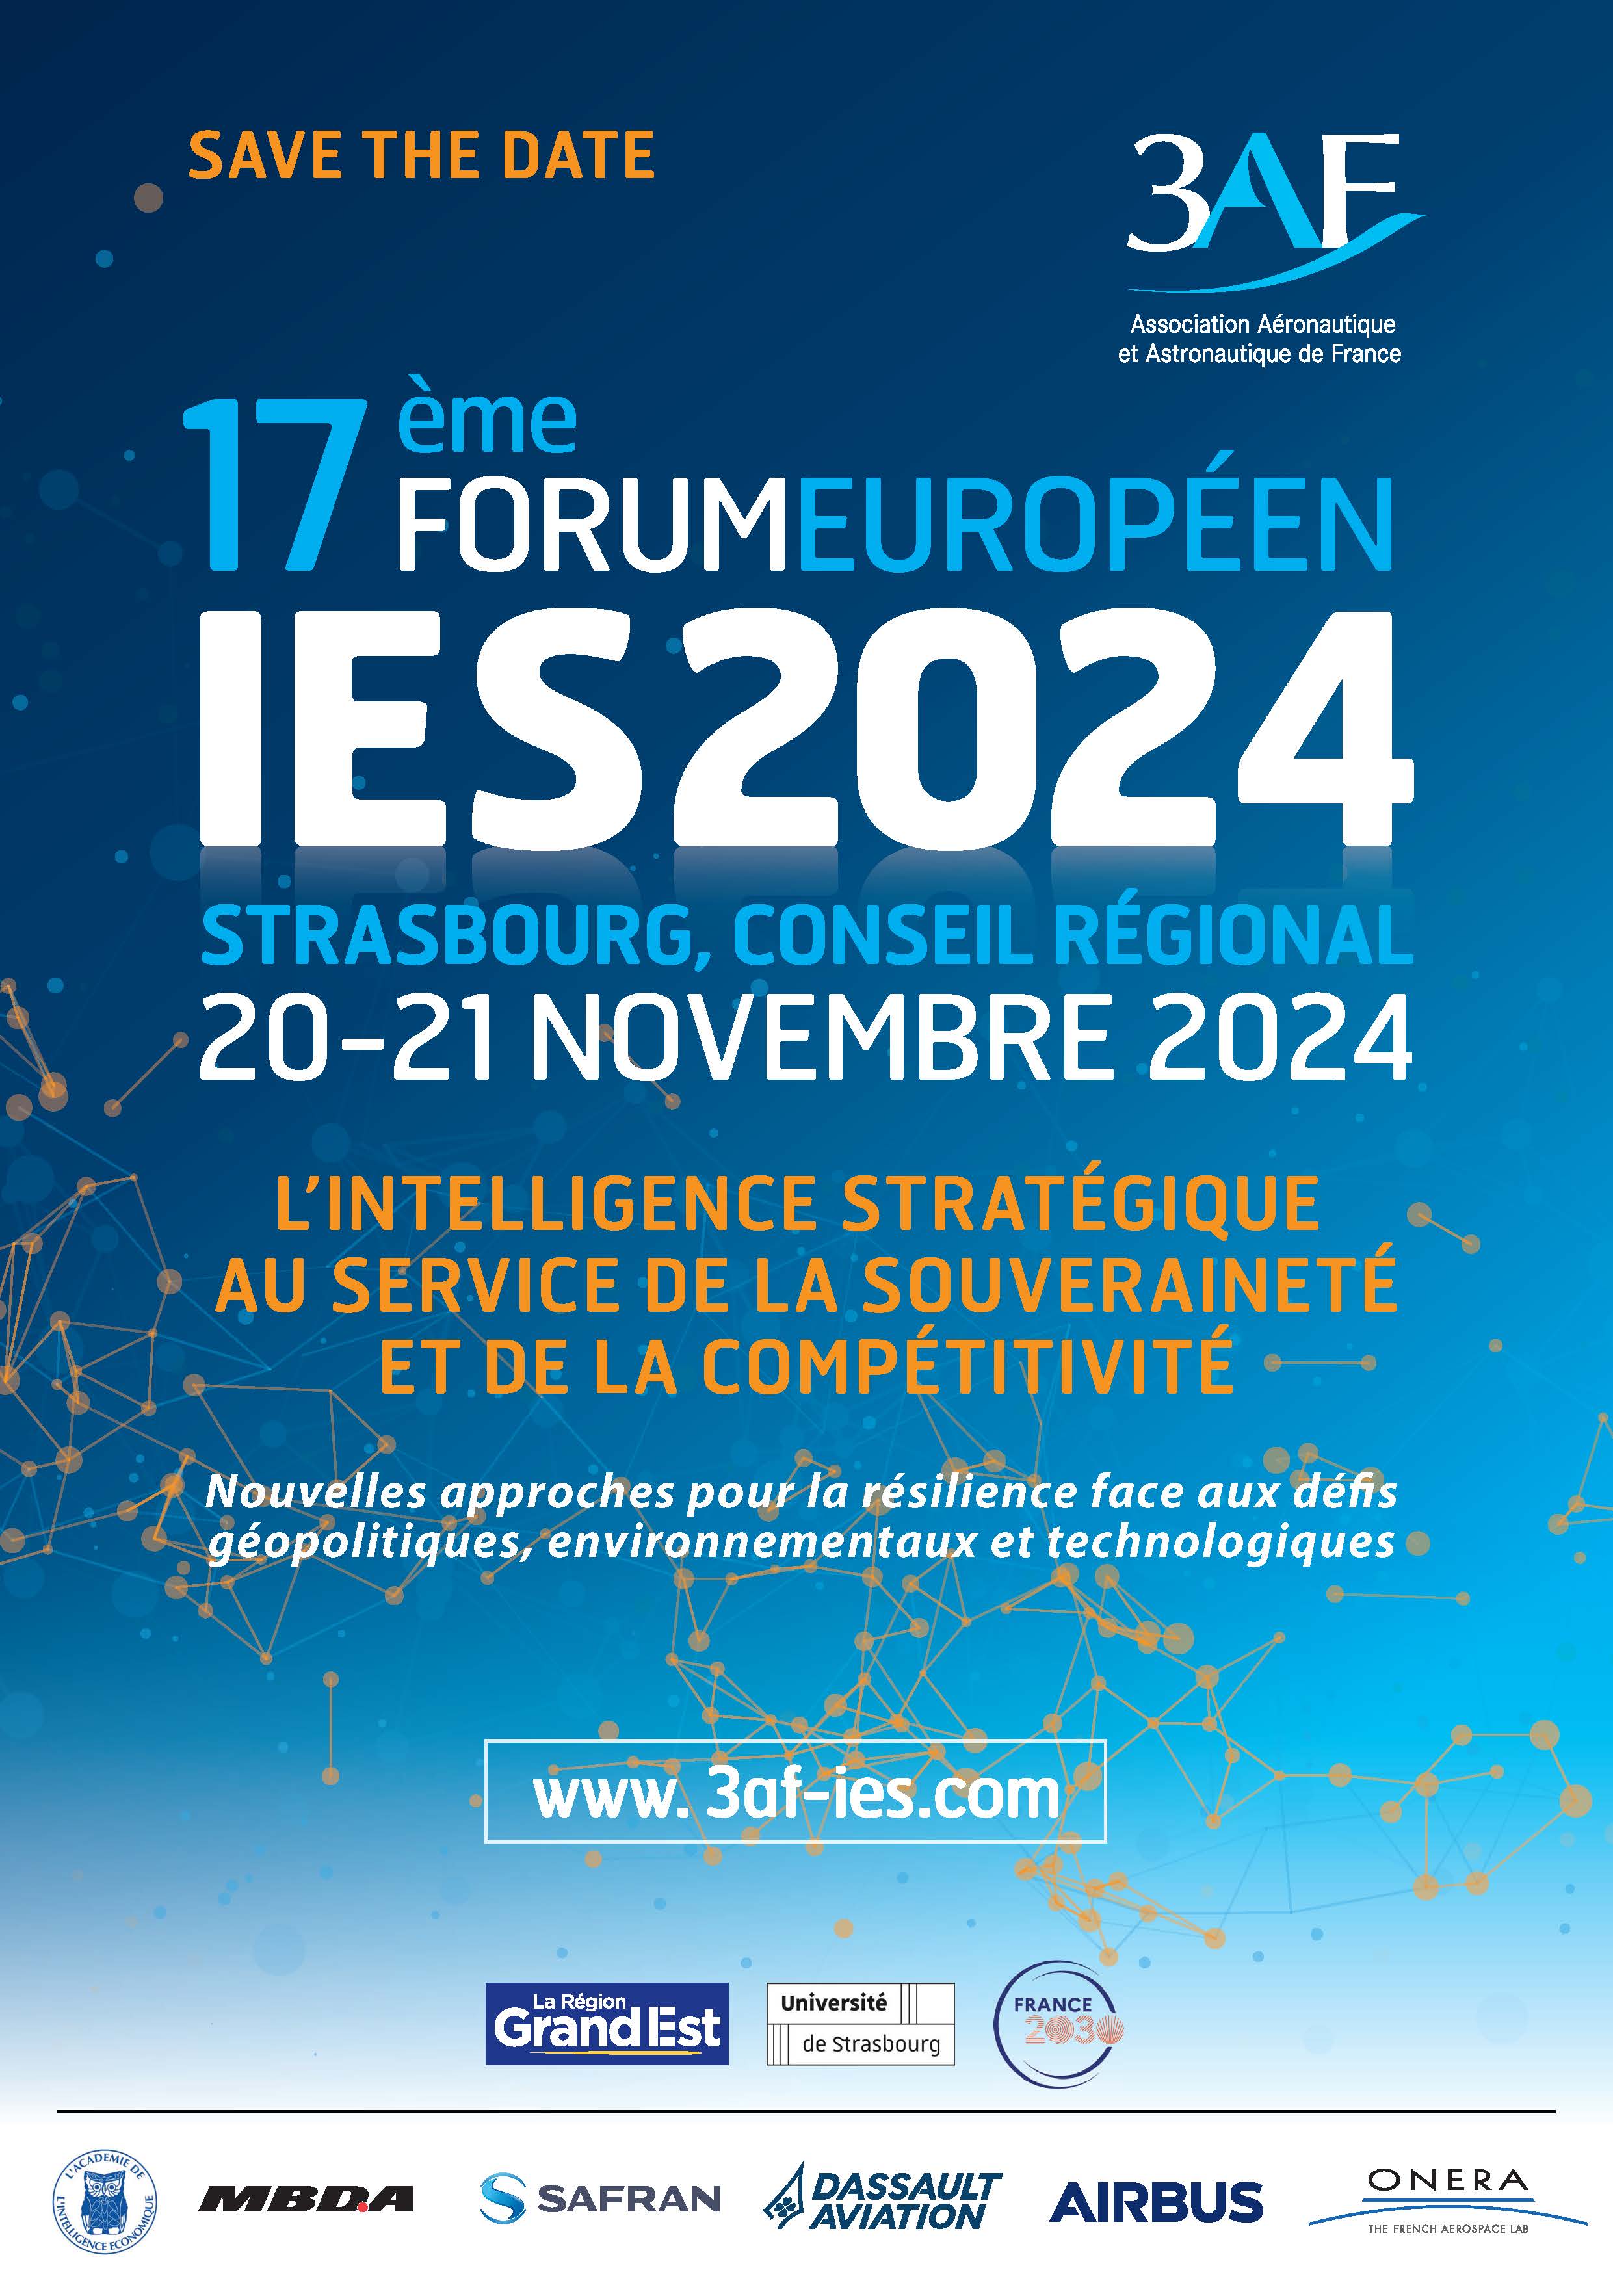 Agenda : Le  20 et 21 Novembre 2024, 17ème Forum Européen IES2024 au Conseil Régional, Strasbourg